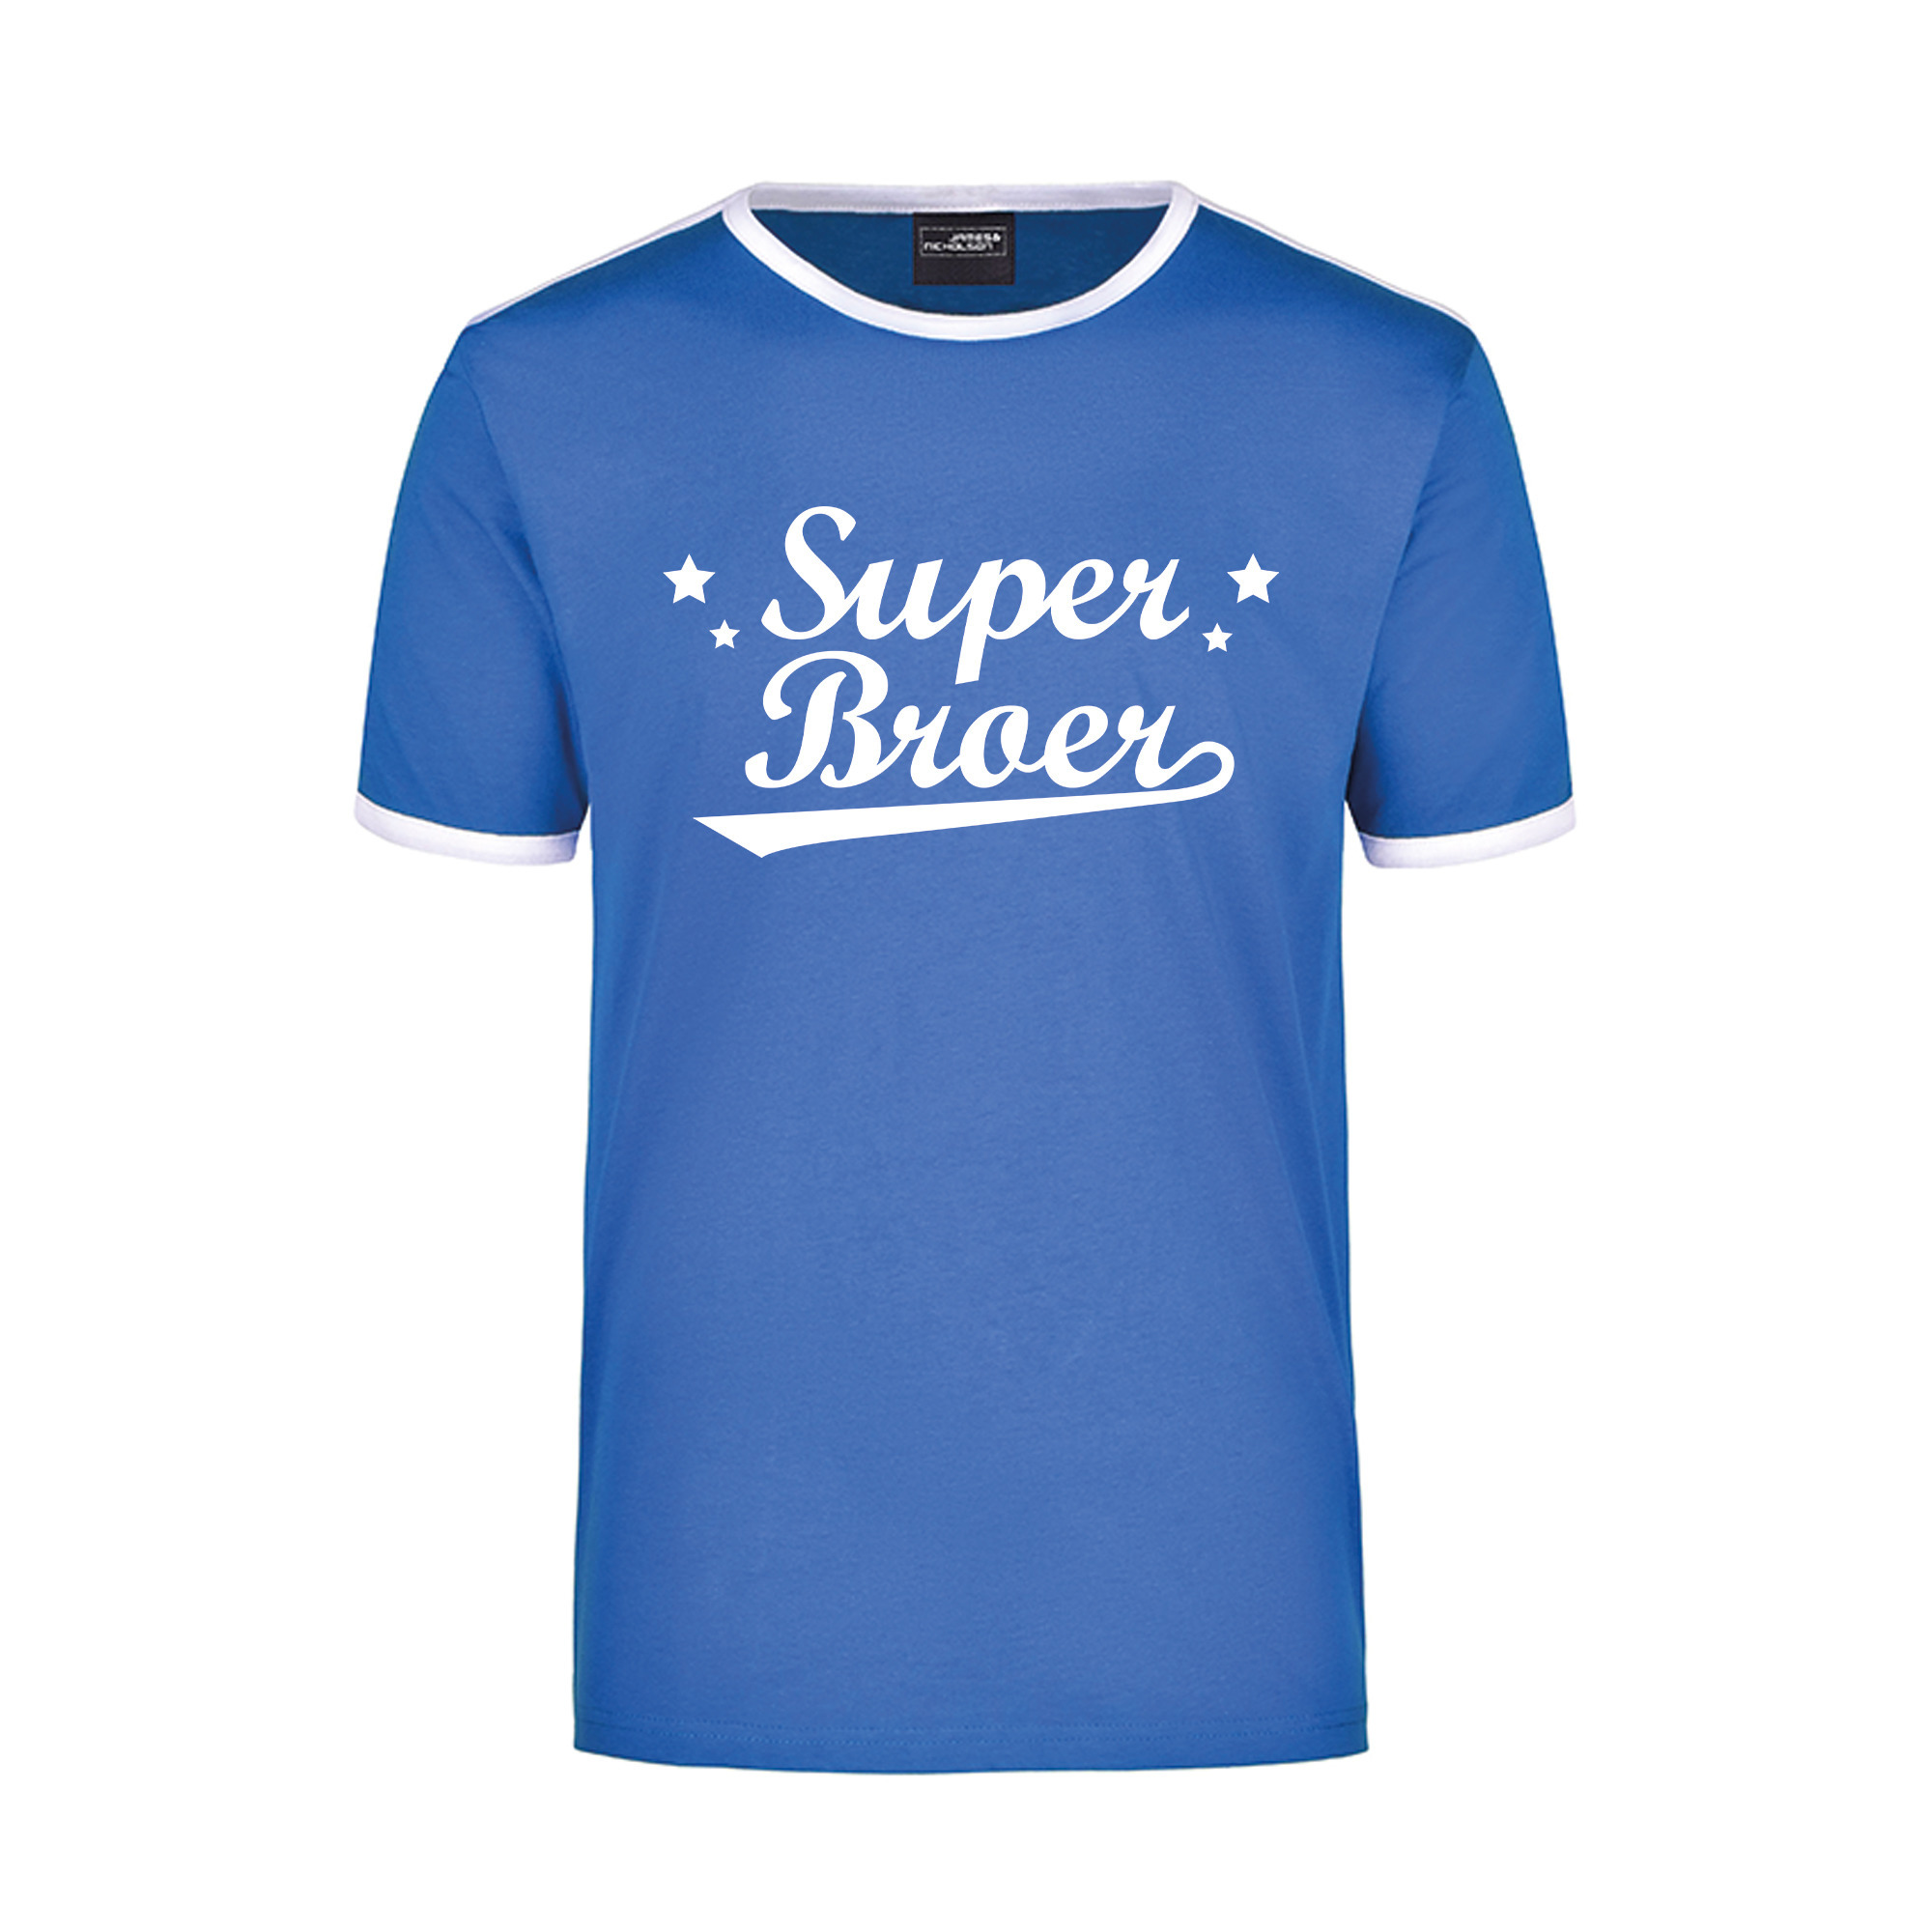 Super broer blauw/wit ringer t-shirt voor heren